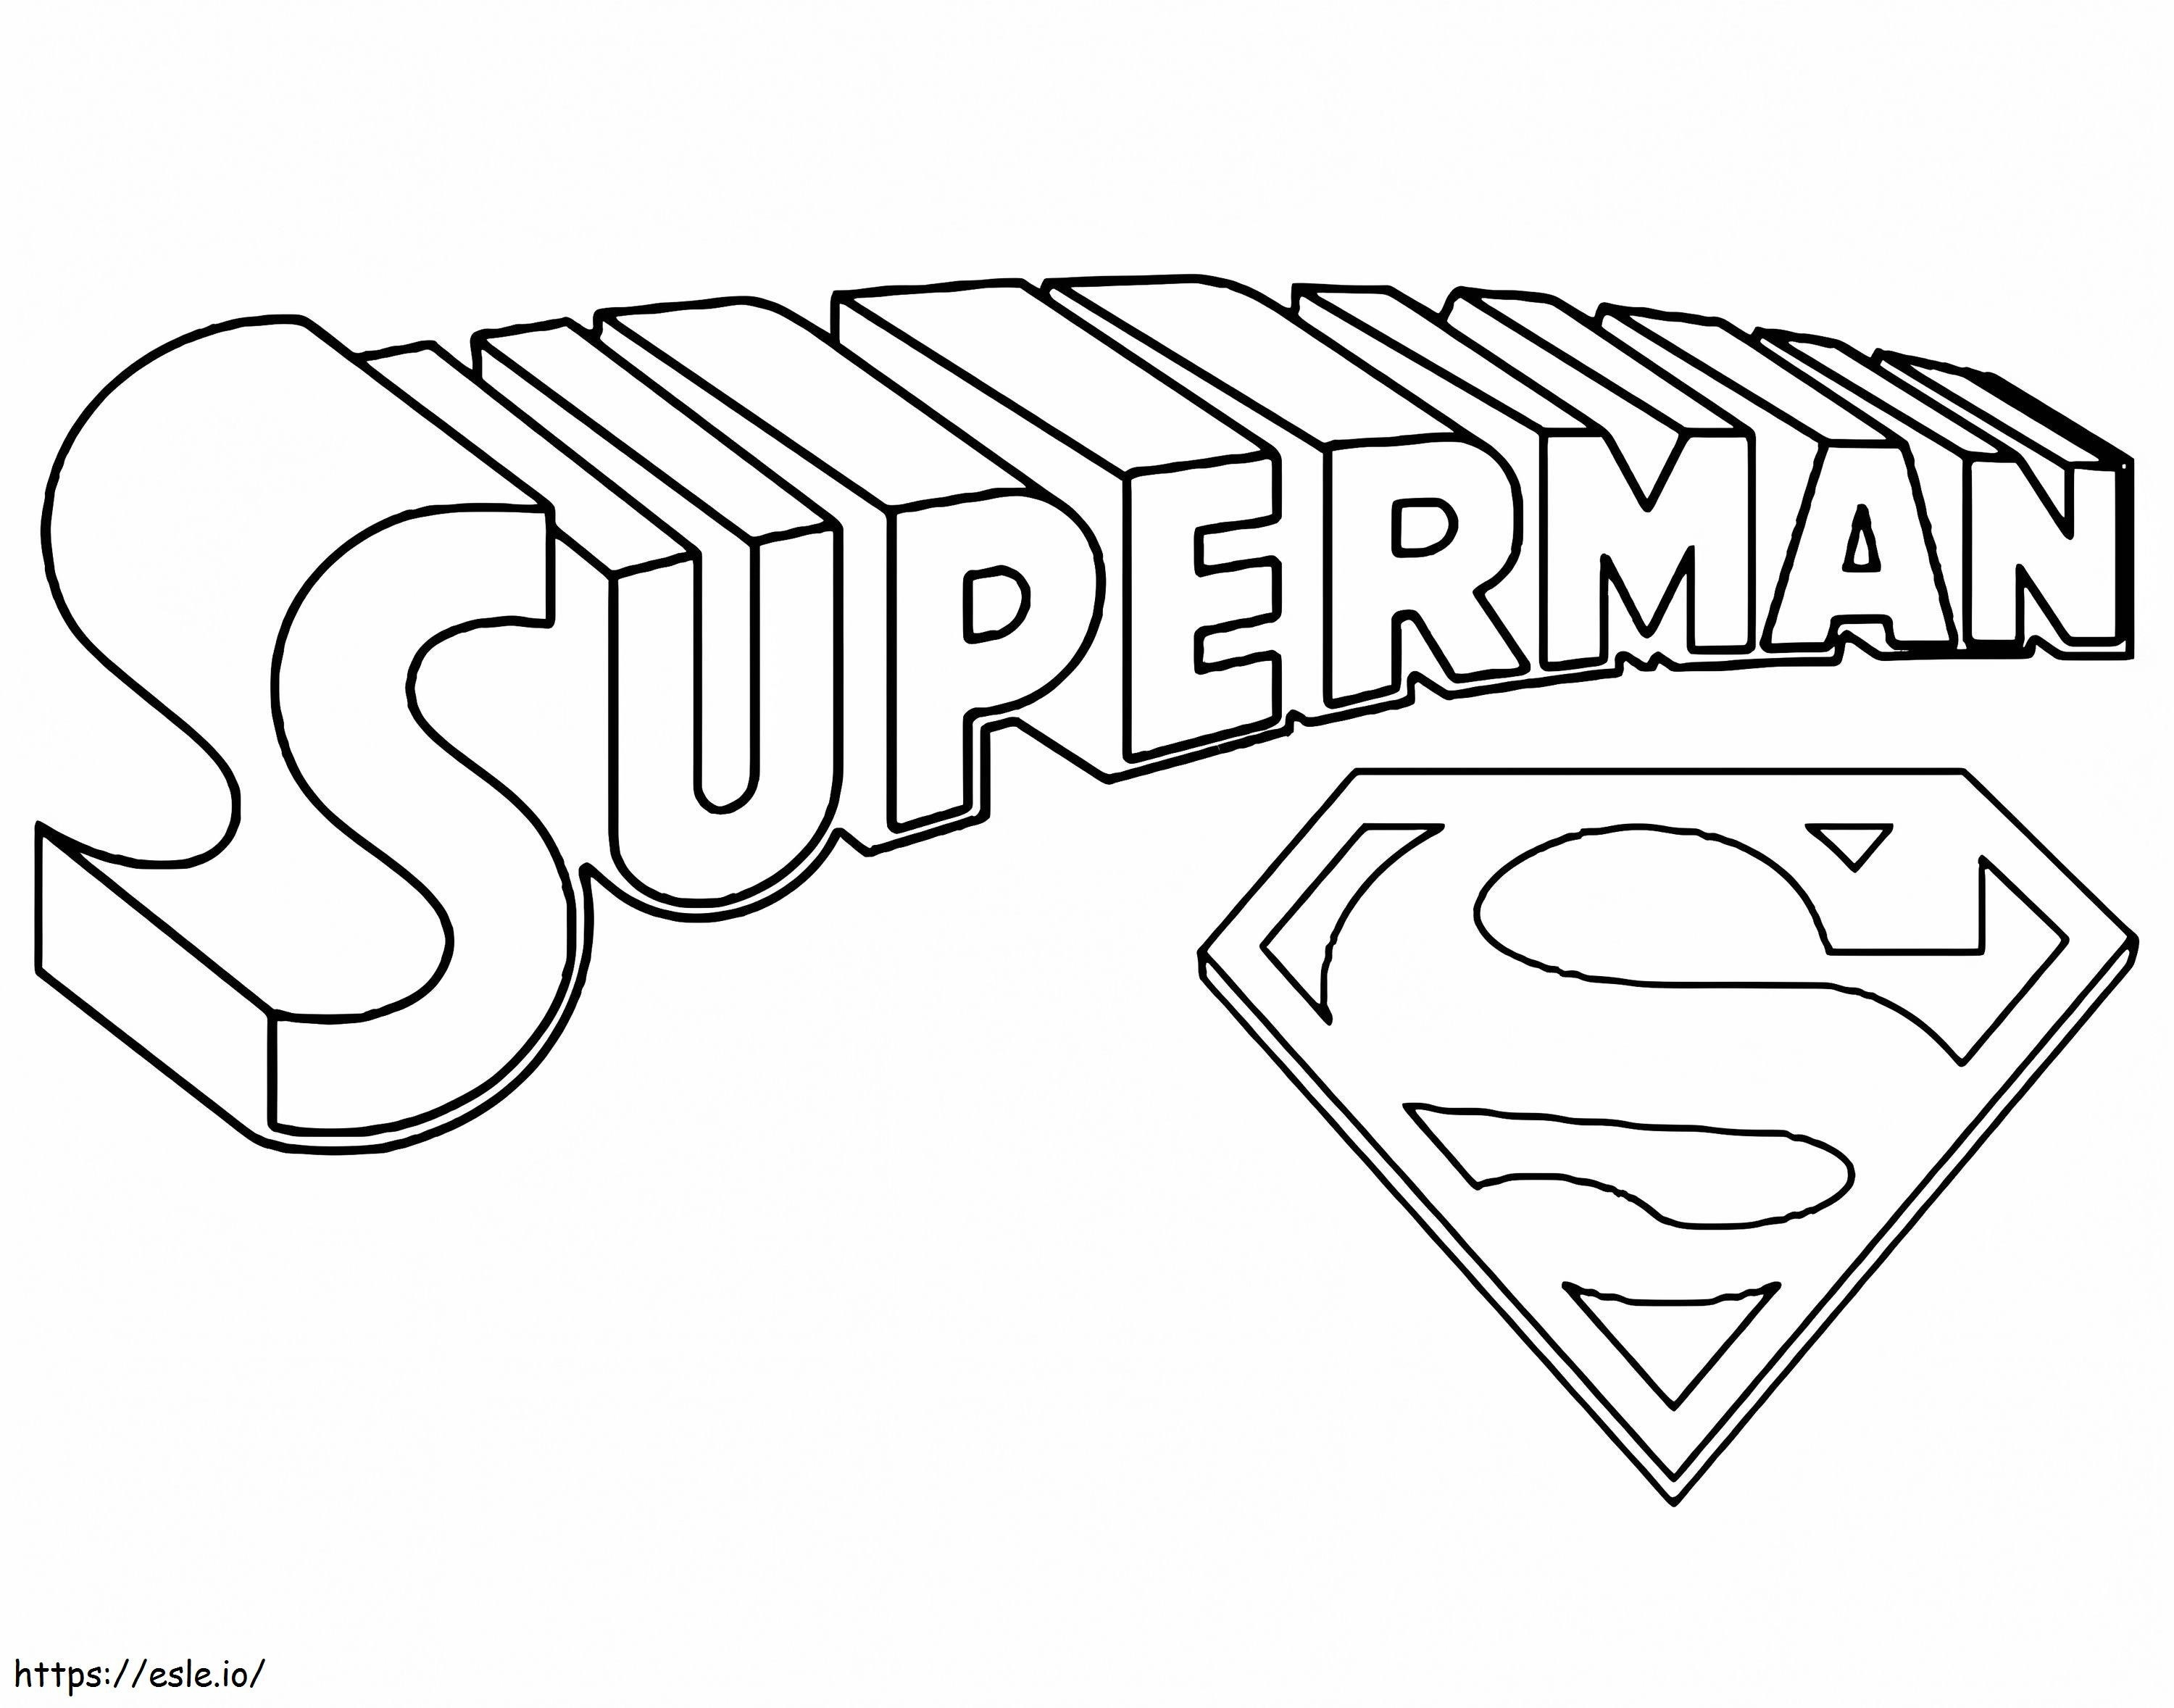 Titolo e simbolo di Superman da colorare